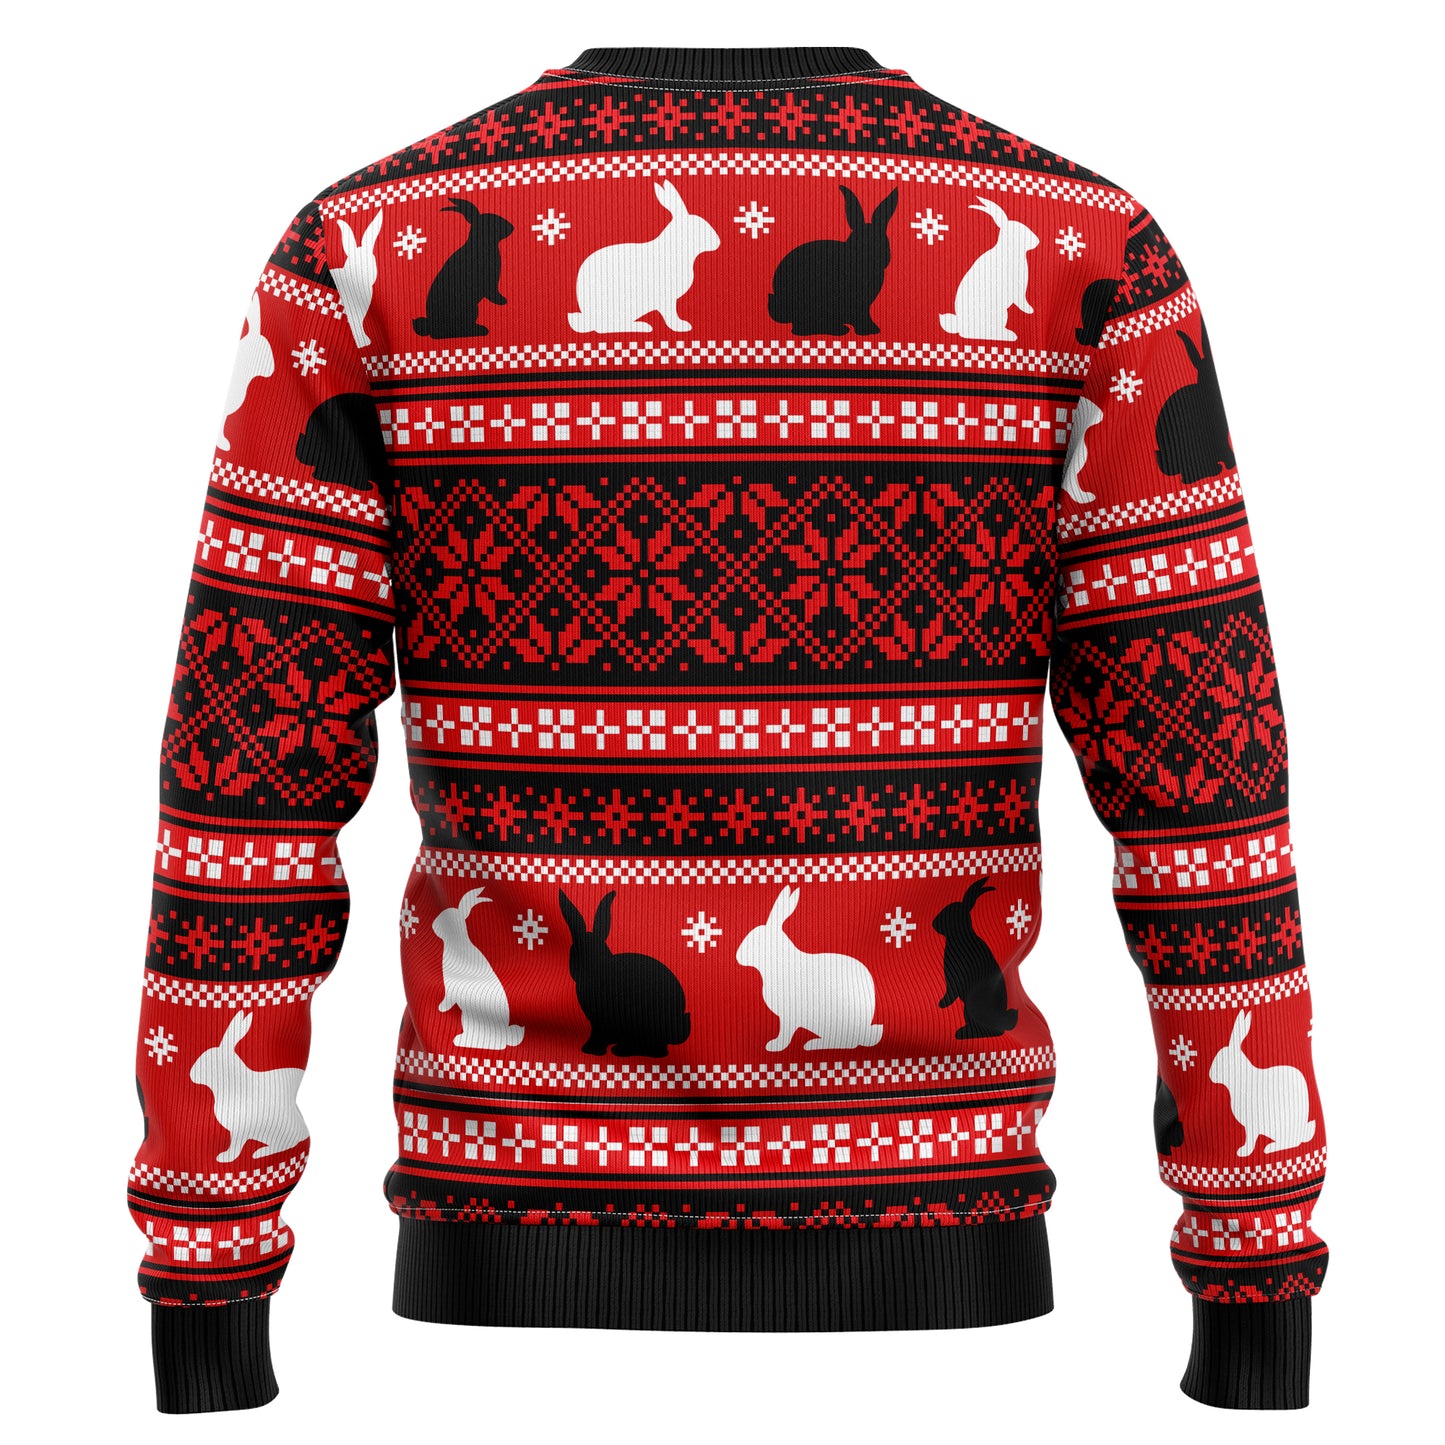 Rabbit Pine Christmas T229 All Over Print Ugly Christmas Sweater